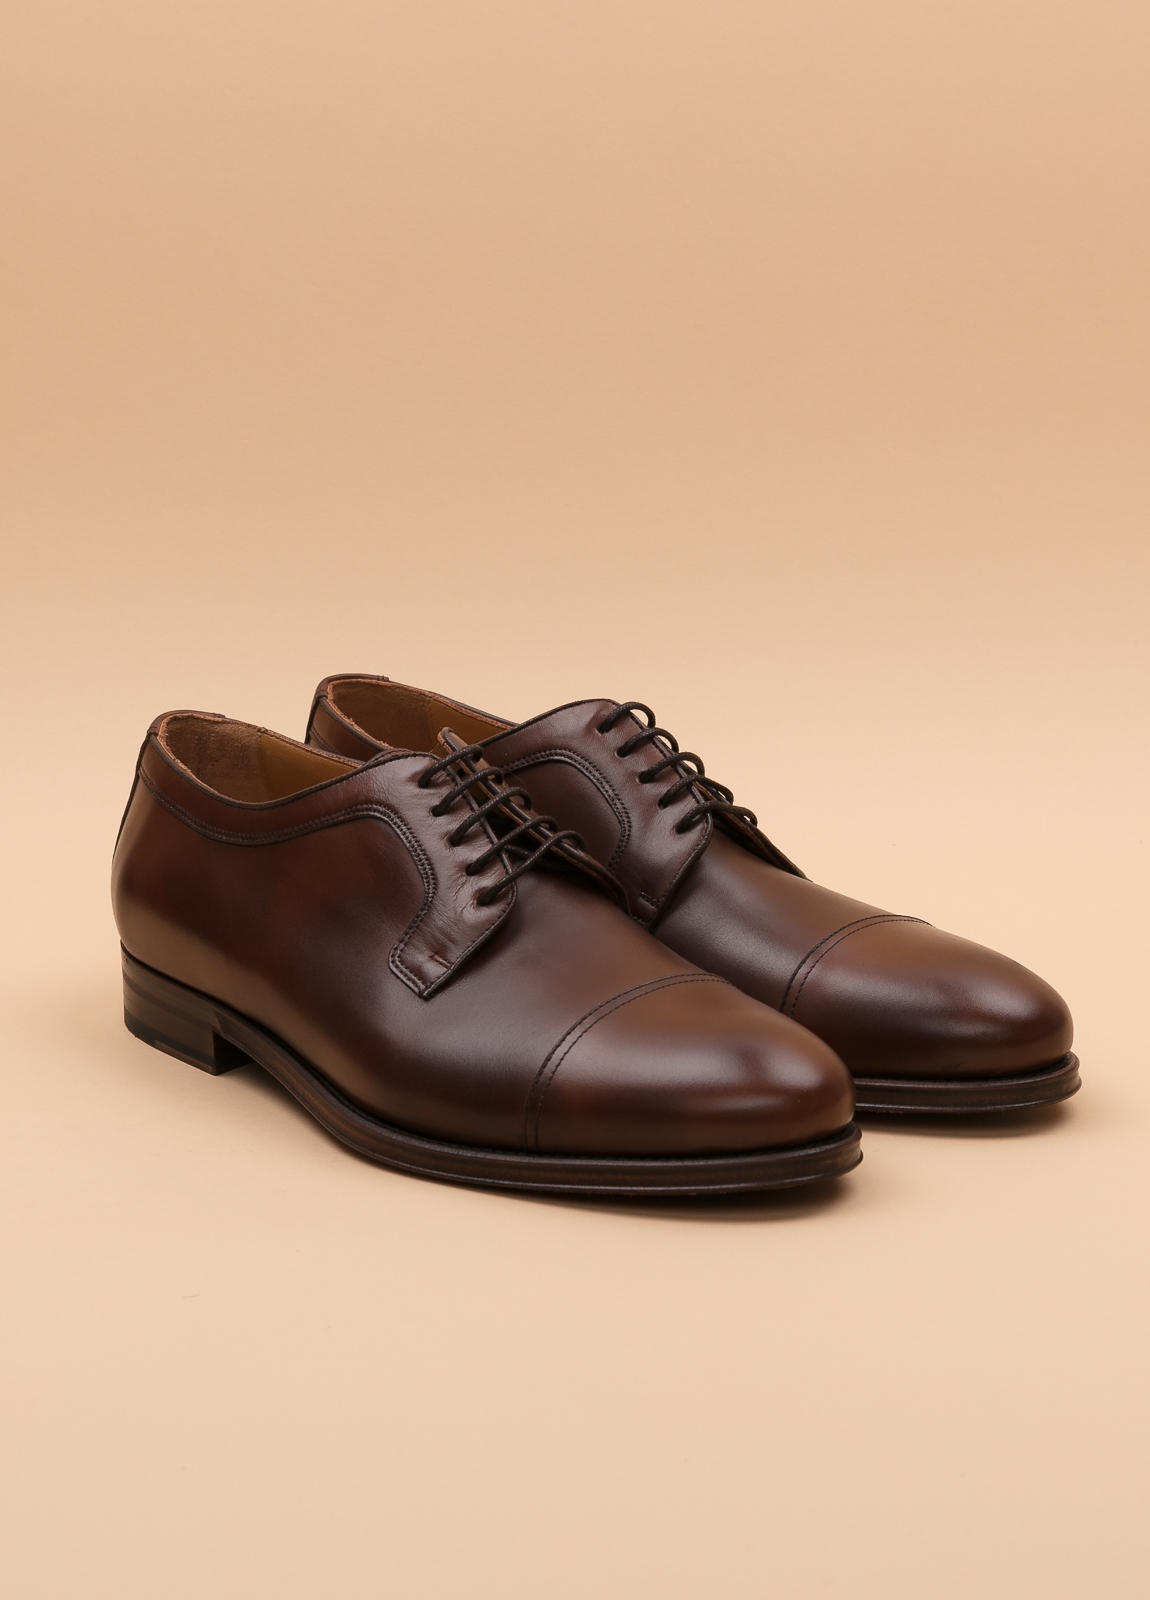 Zapato Formal Wear FUREST COLECCIÓN marrón - Ítem3